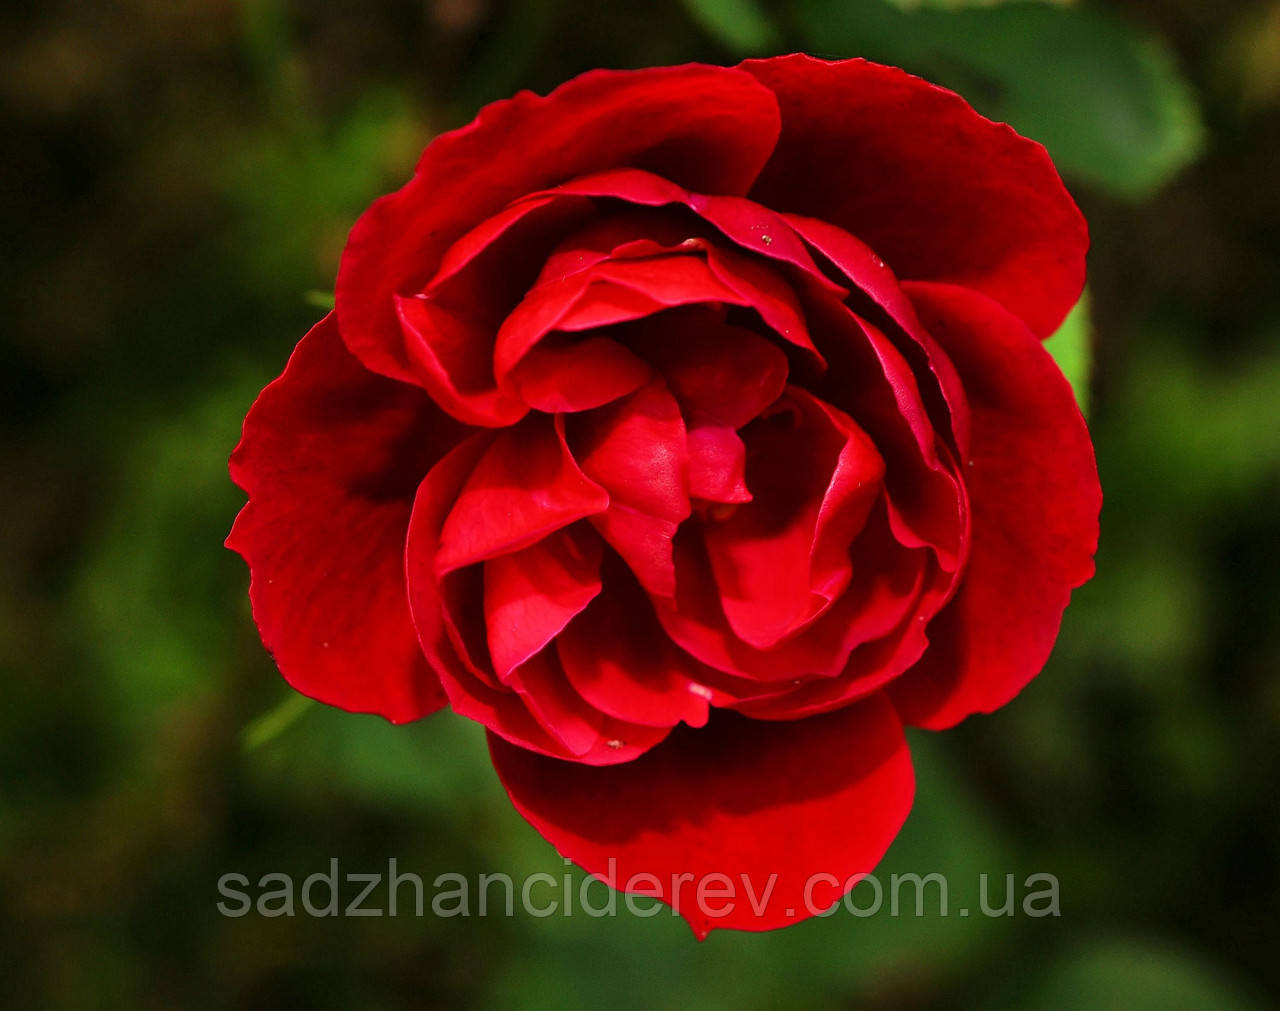 Саджанці троянд Симпатія (Sympathie), фото 1